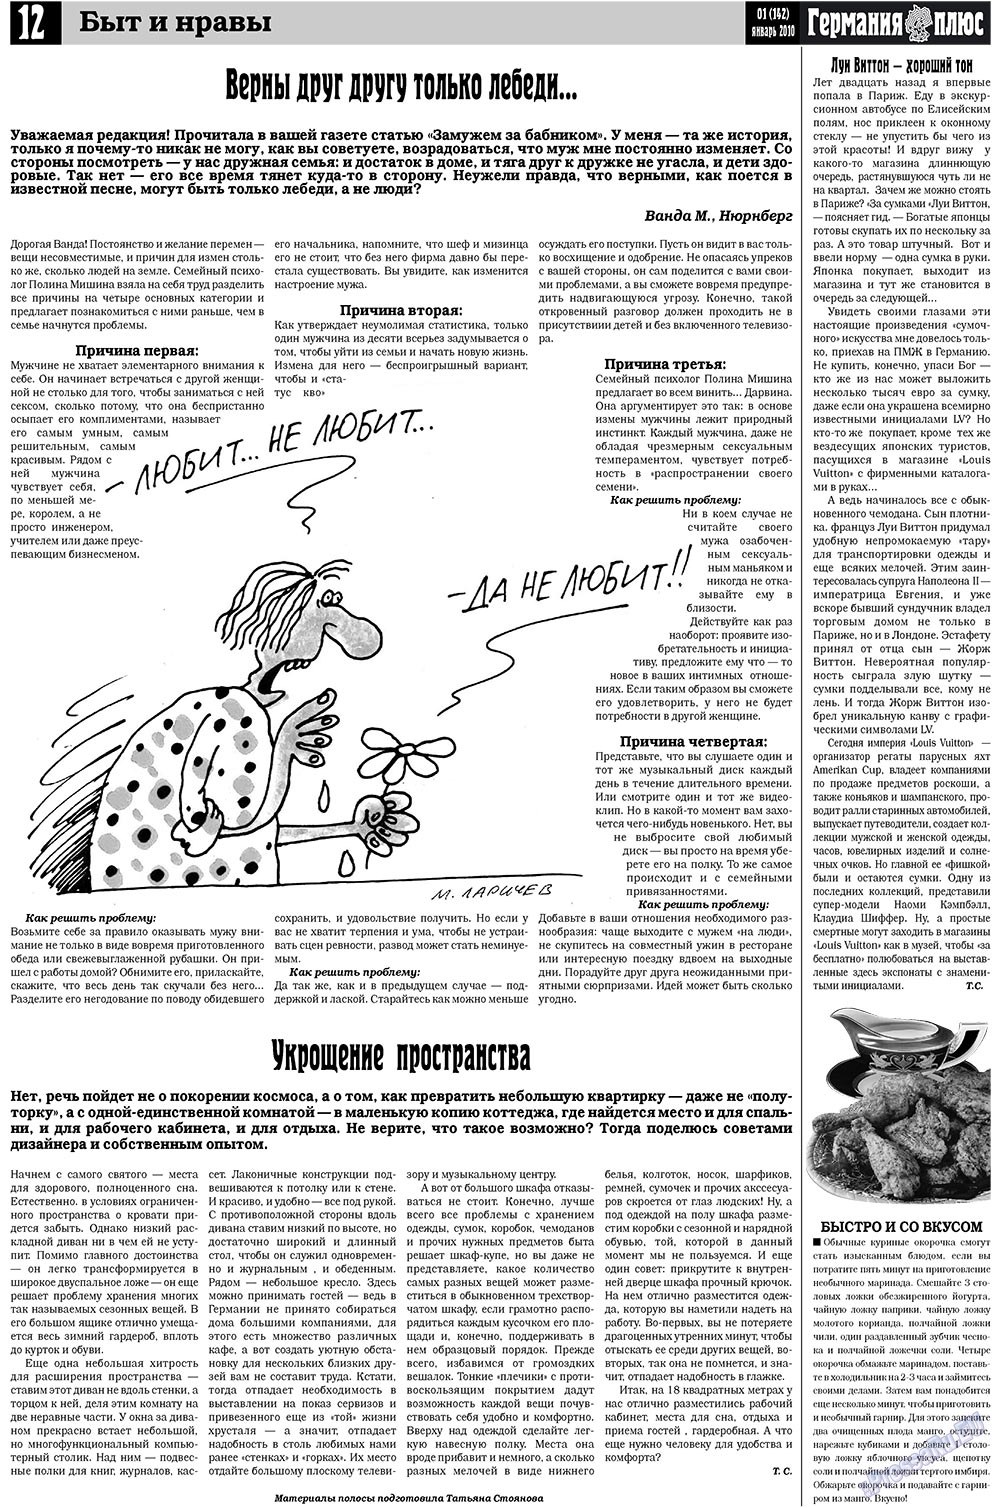 Германия плюс, газета. 2010 №1 стр.12